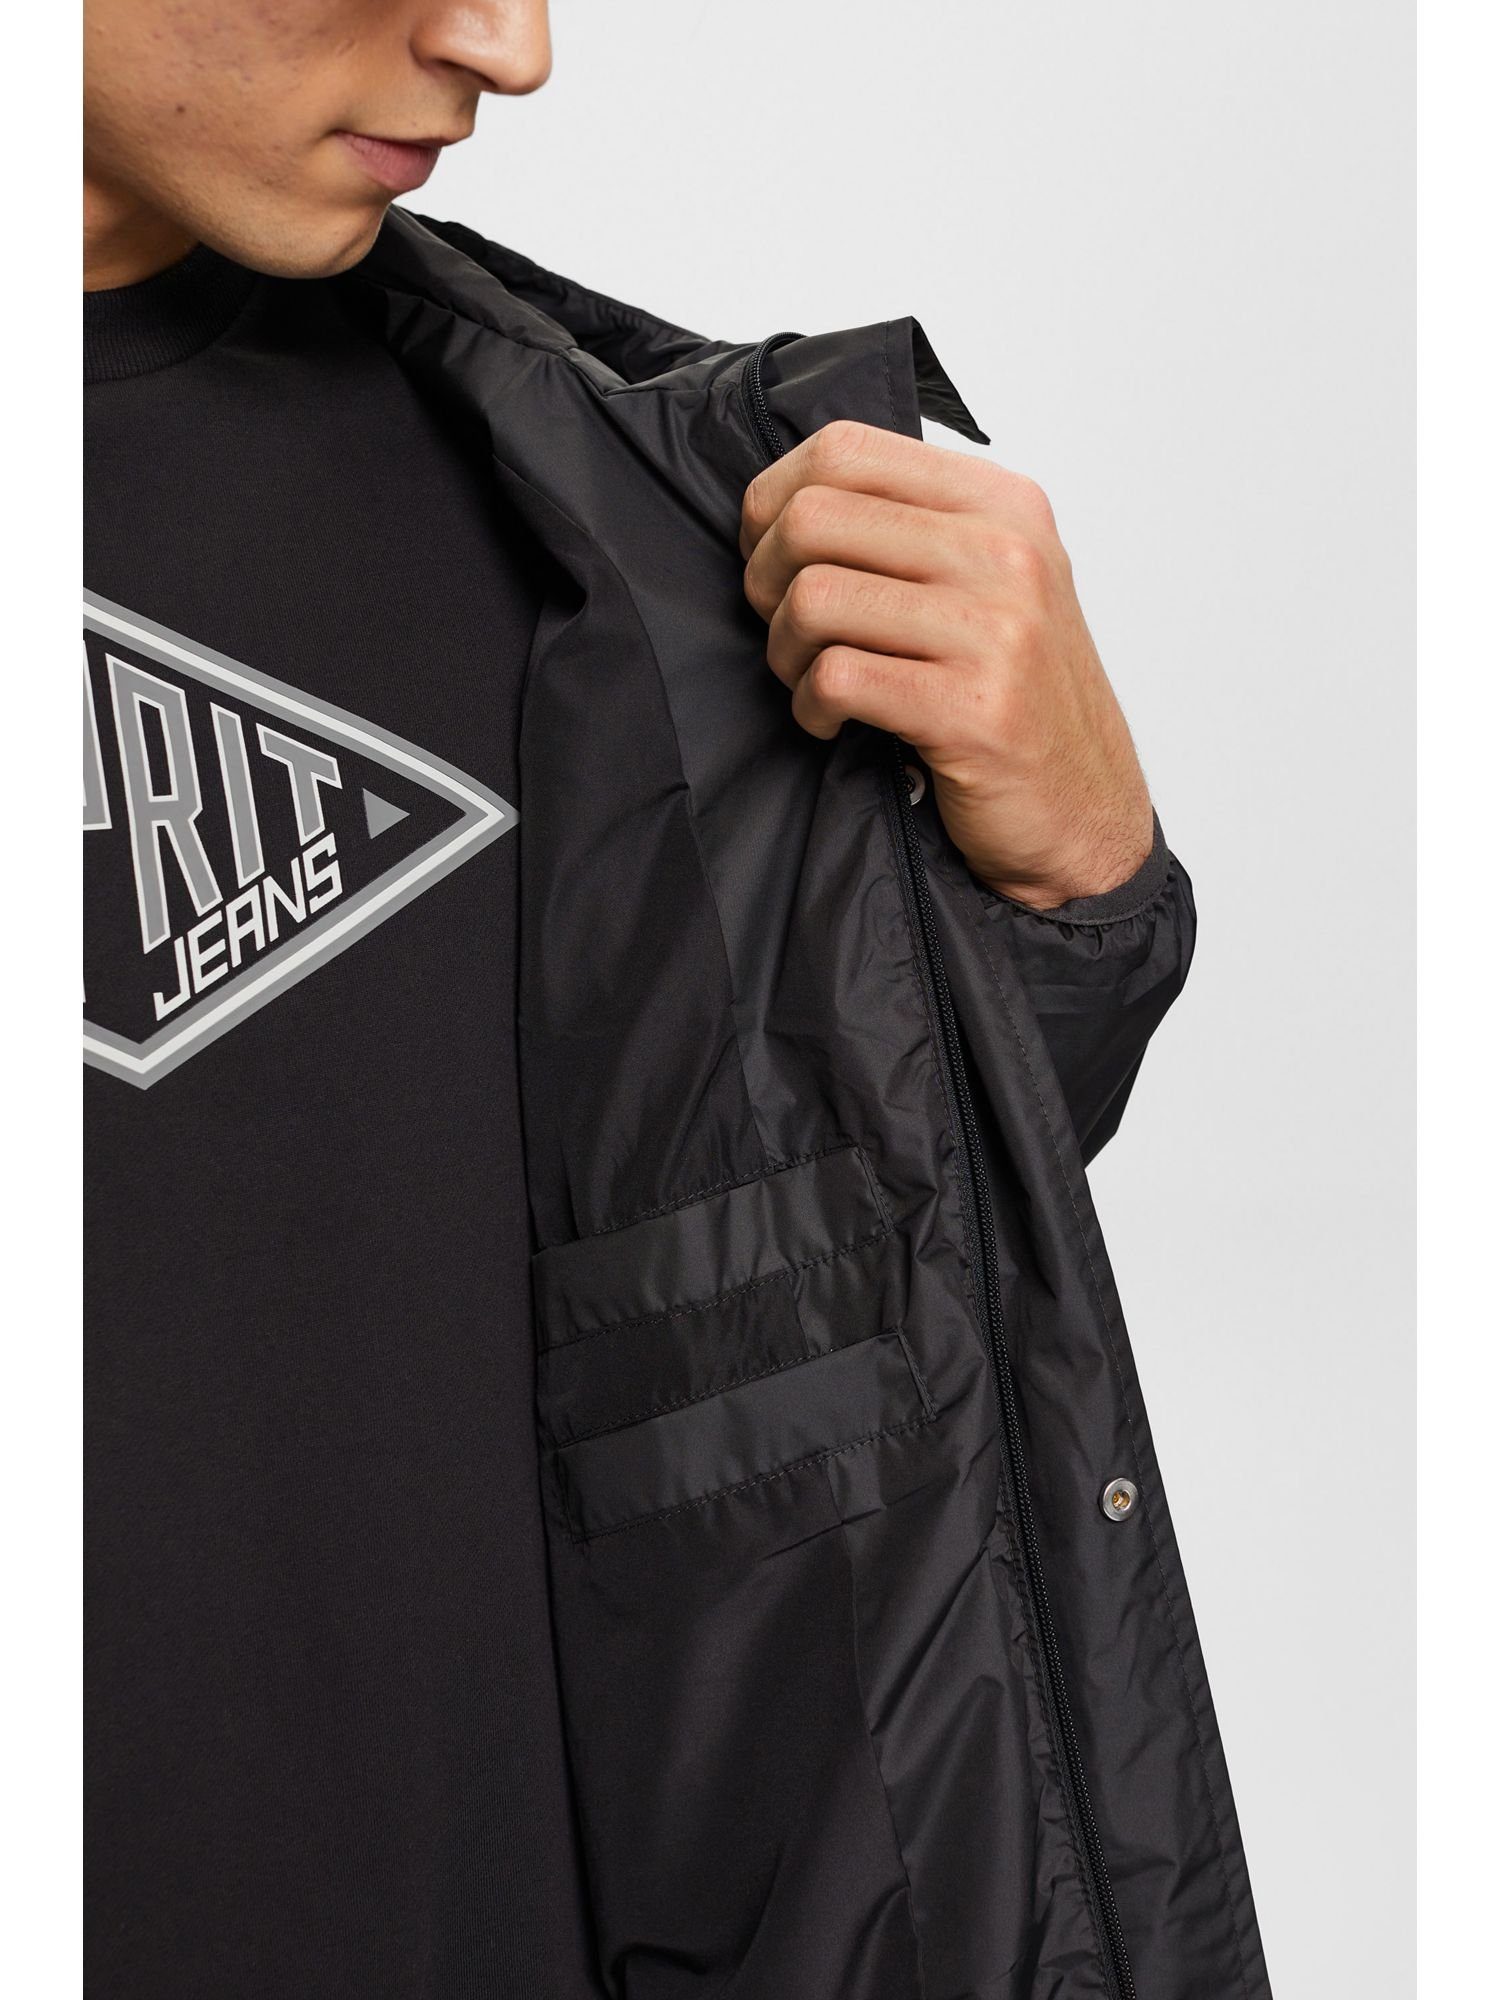 Leichte Collection Esprit BLACK Kapuze Regenjacke Regenjacke mit